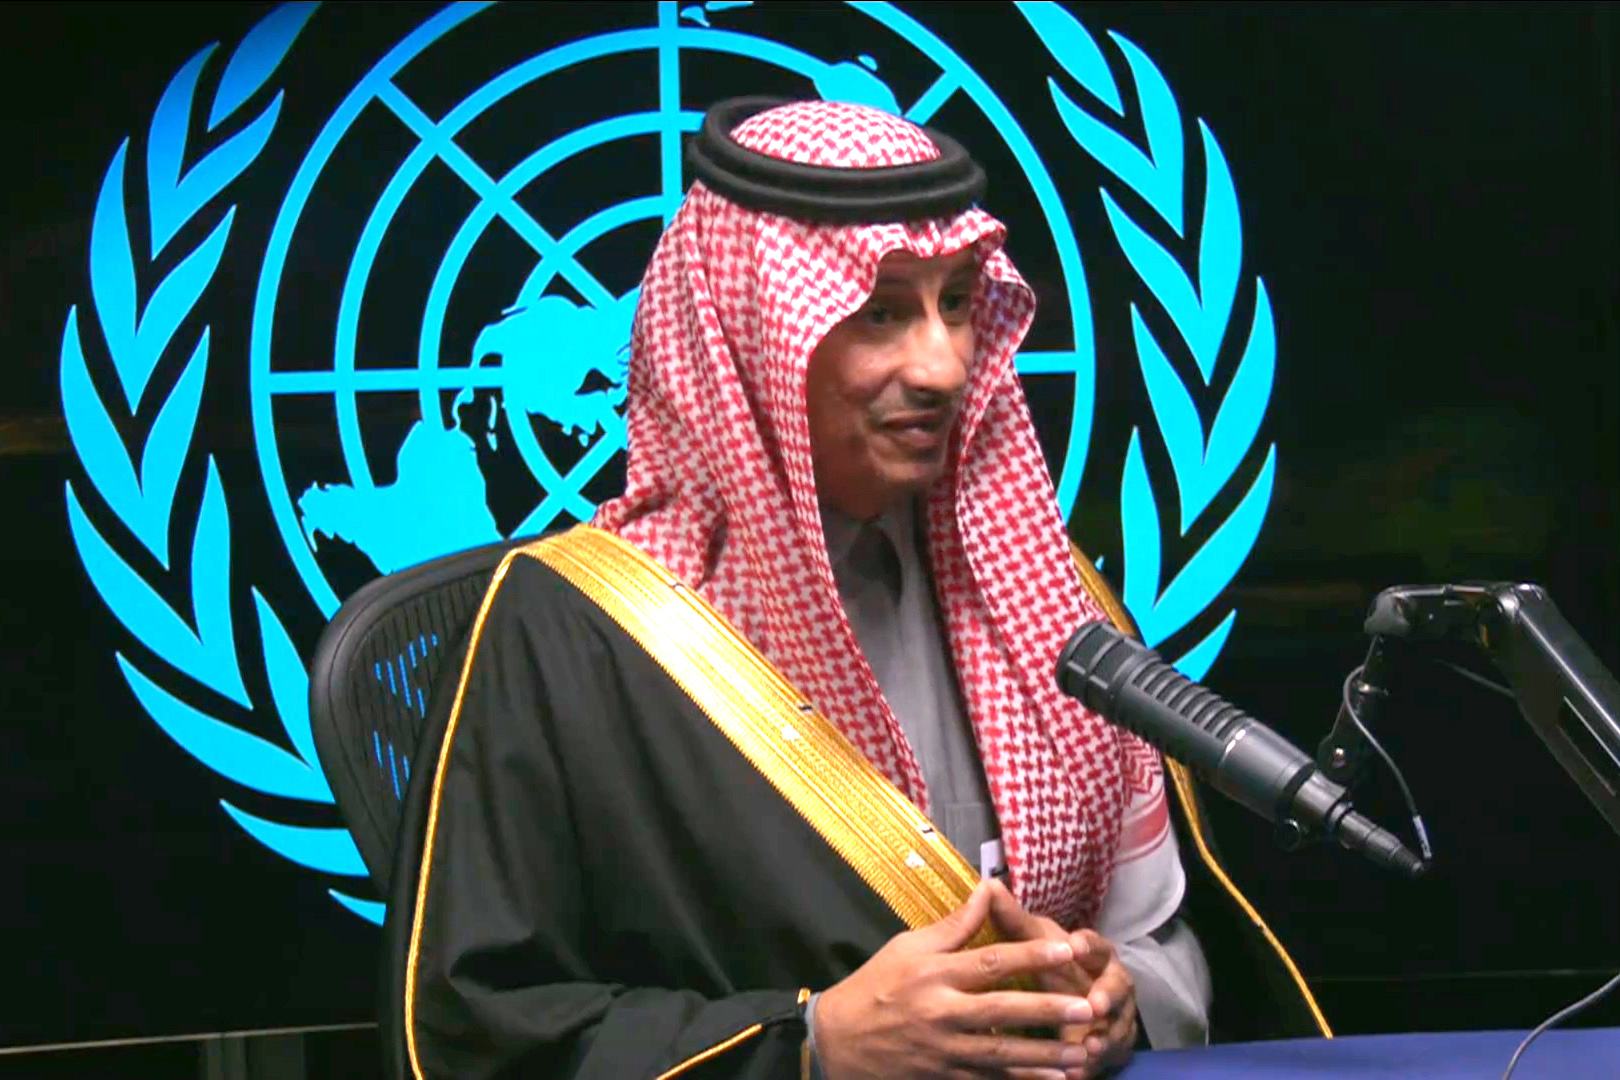 حوار مع معالي الوزير أحمد الخطيب وزير السياحة في المملكة العربية السعودية